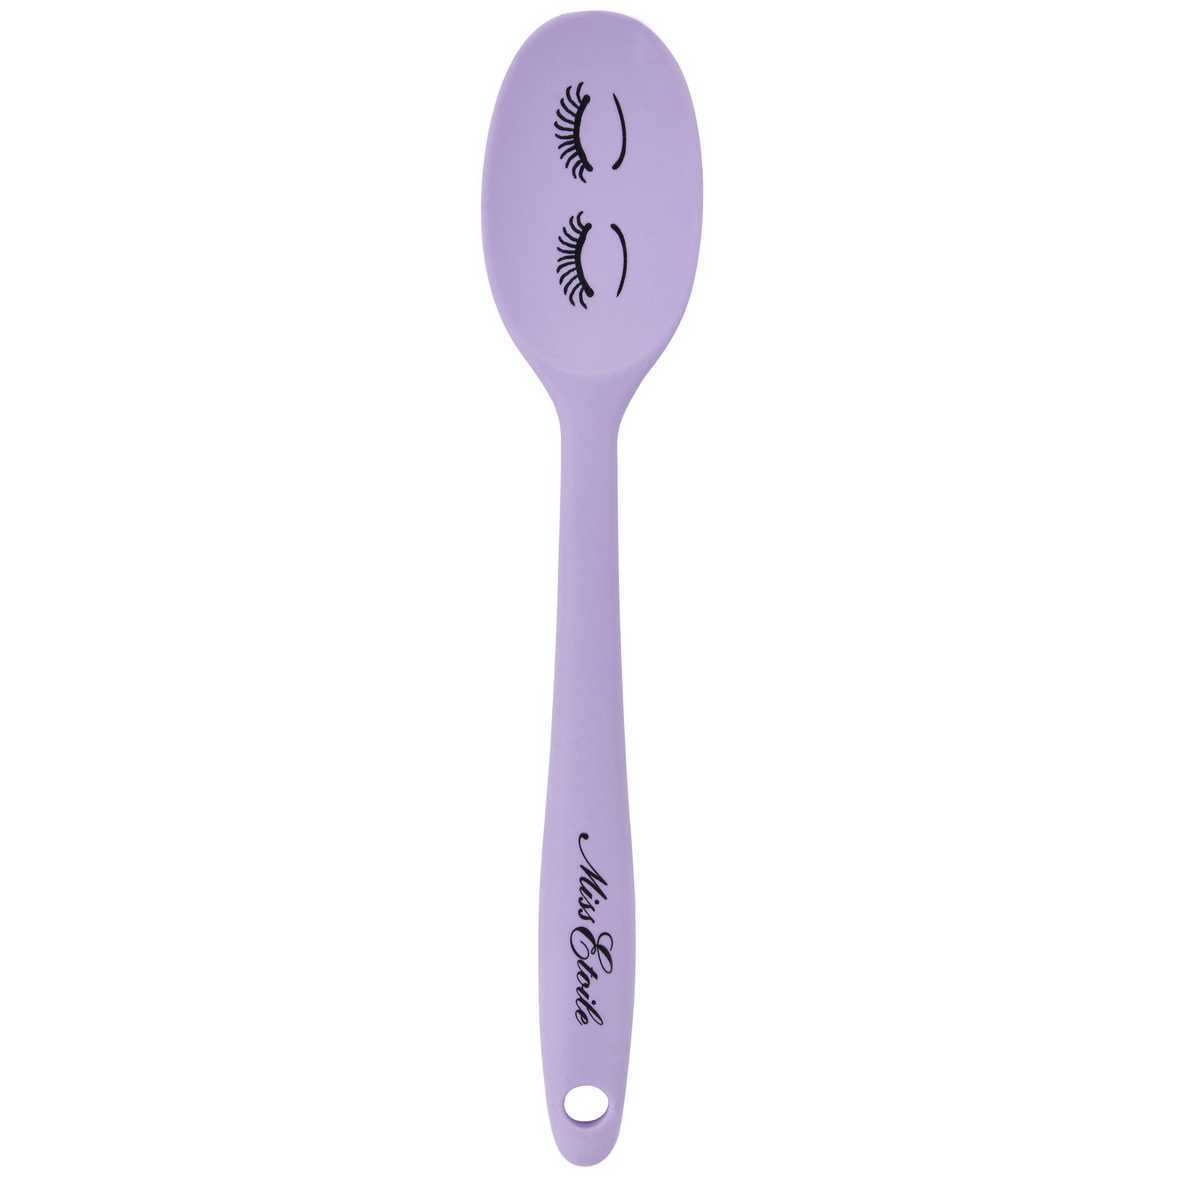 Miss Etoile kitchen tools with open eyes spoon - SAK Home